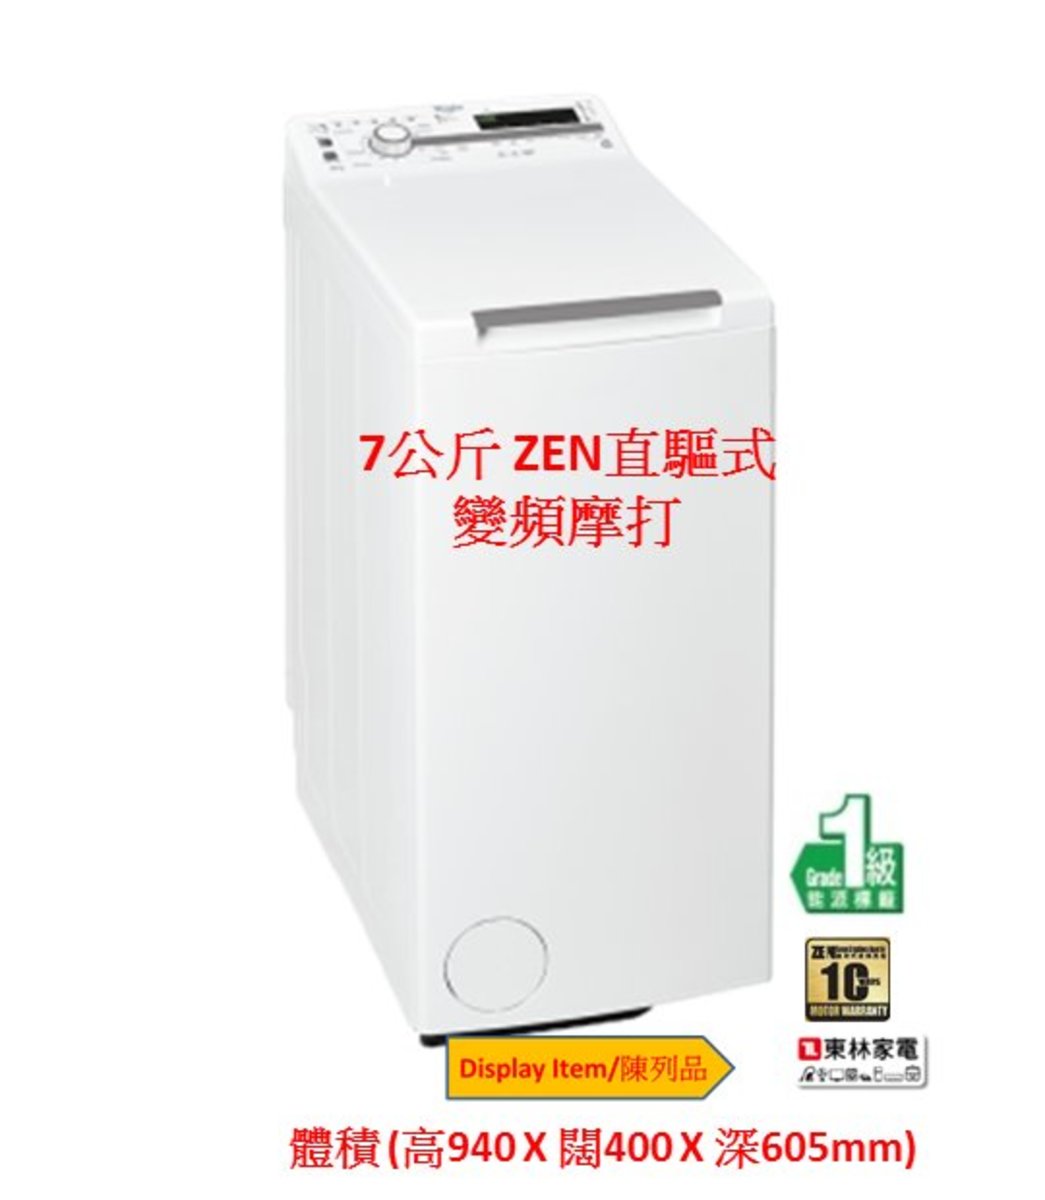 惠而浦 上置洗衣機zen直驅式變頻馬達7公斤 10轉 Display Item 陳列品 Tdlrb 顏色 白色 香港電視hktvmall 網上購物